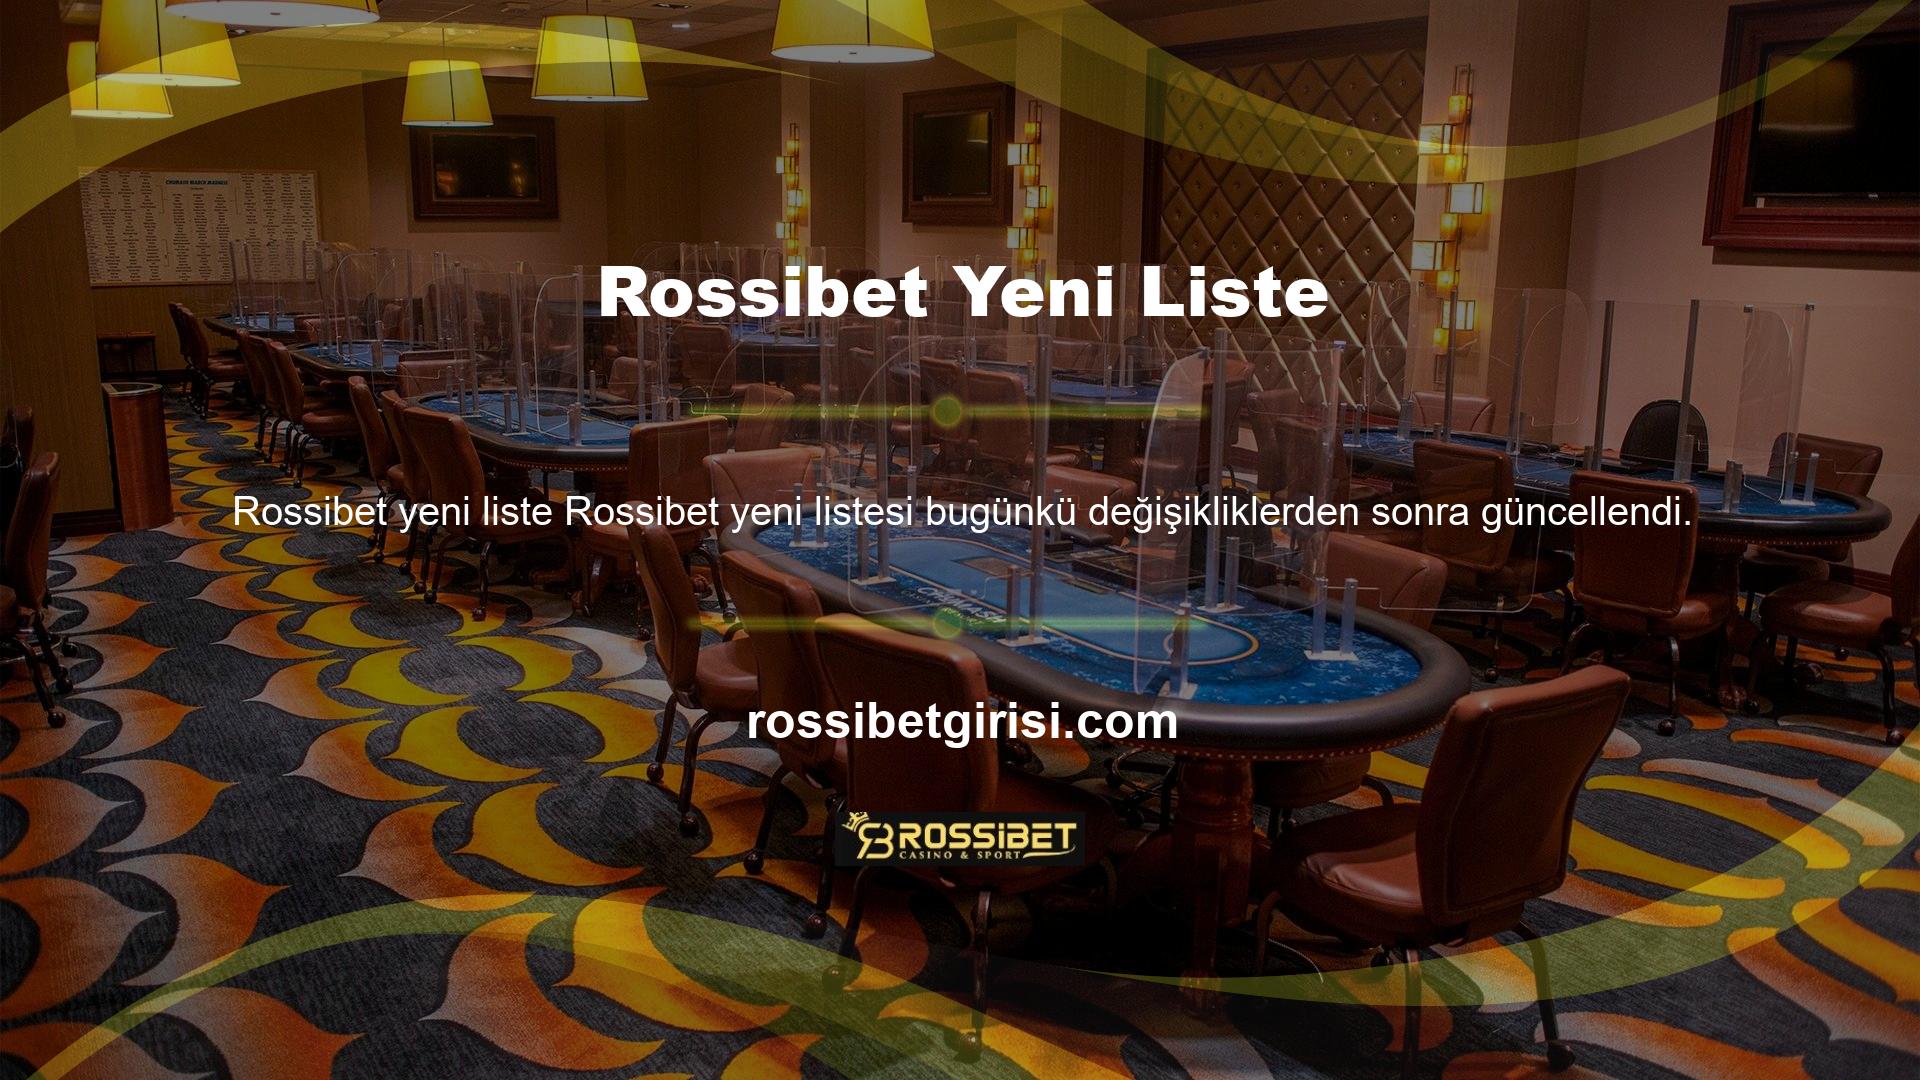 Rossibet web sitesini ziyaret etmek isterseniz bu adresi kullanabilirsiniz